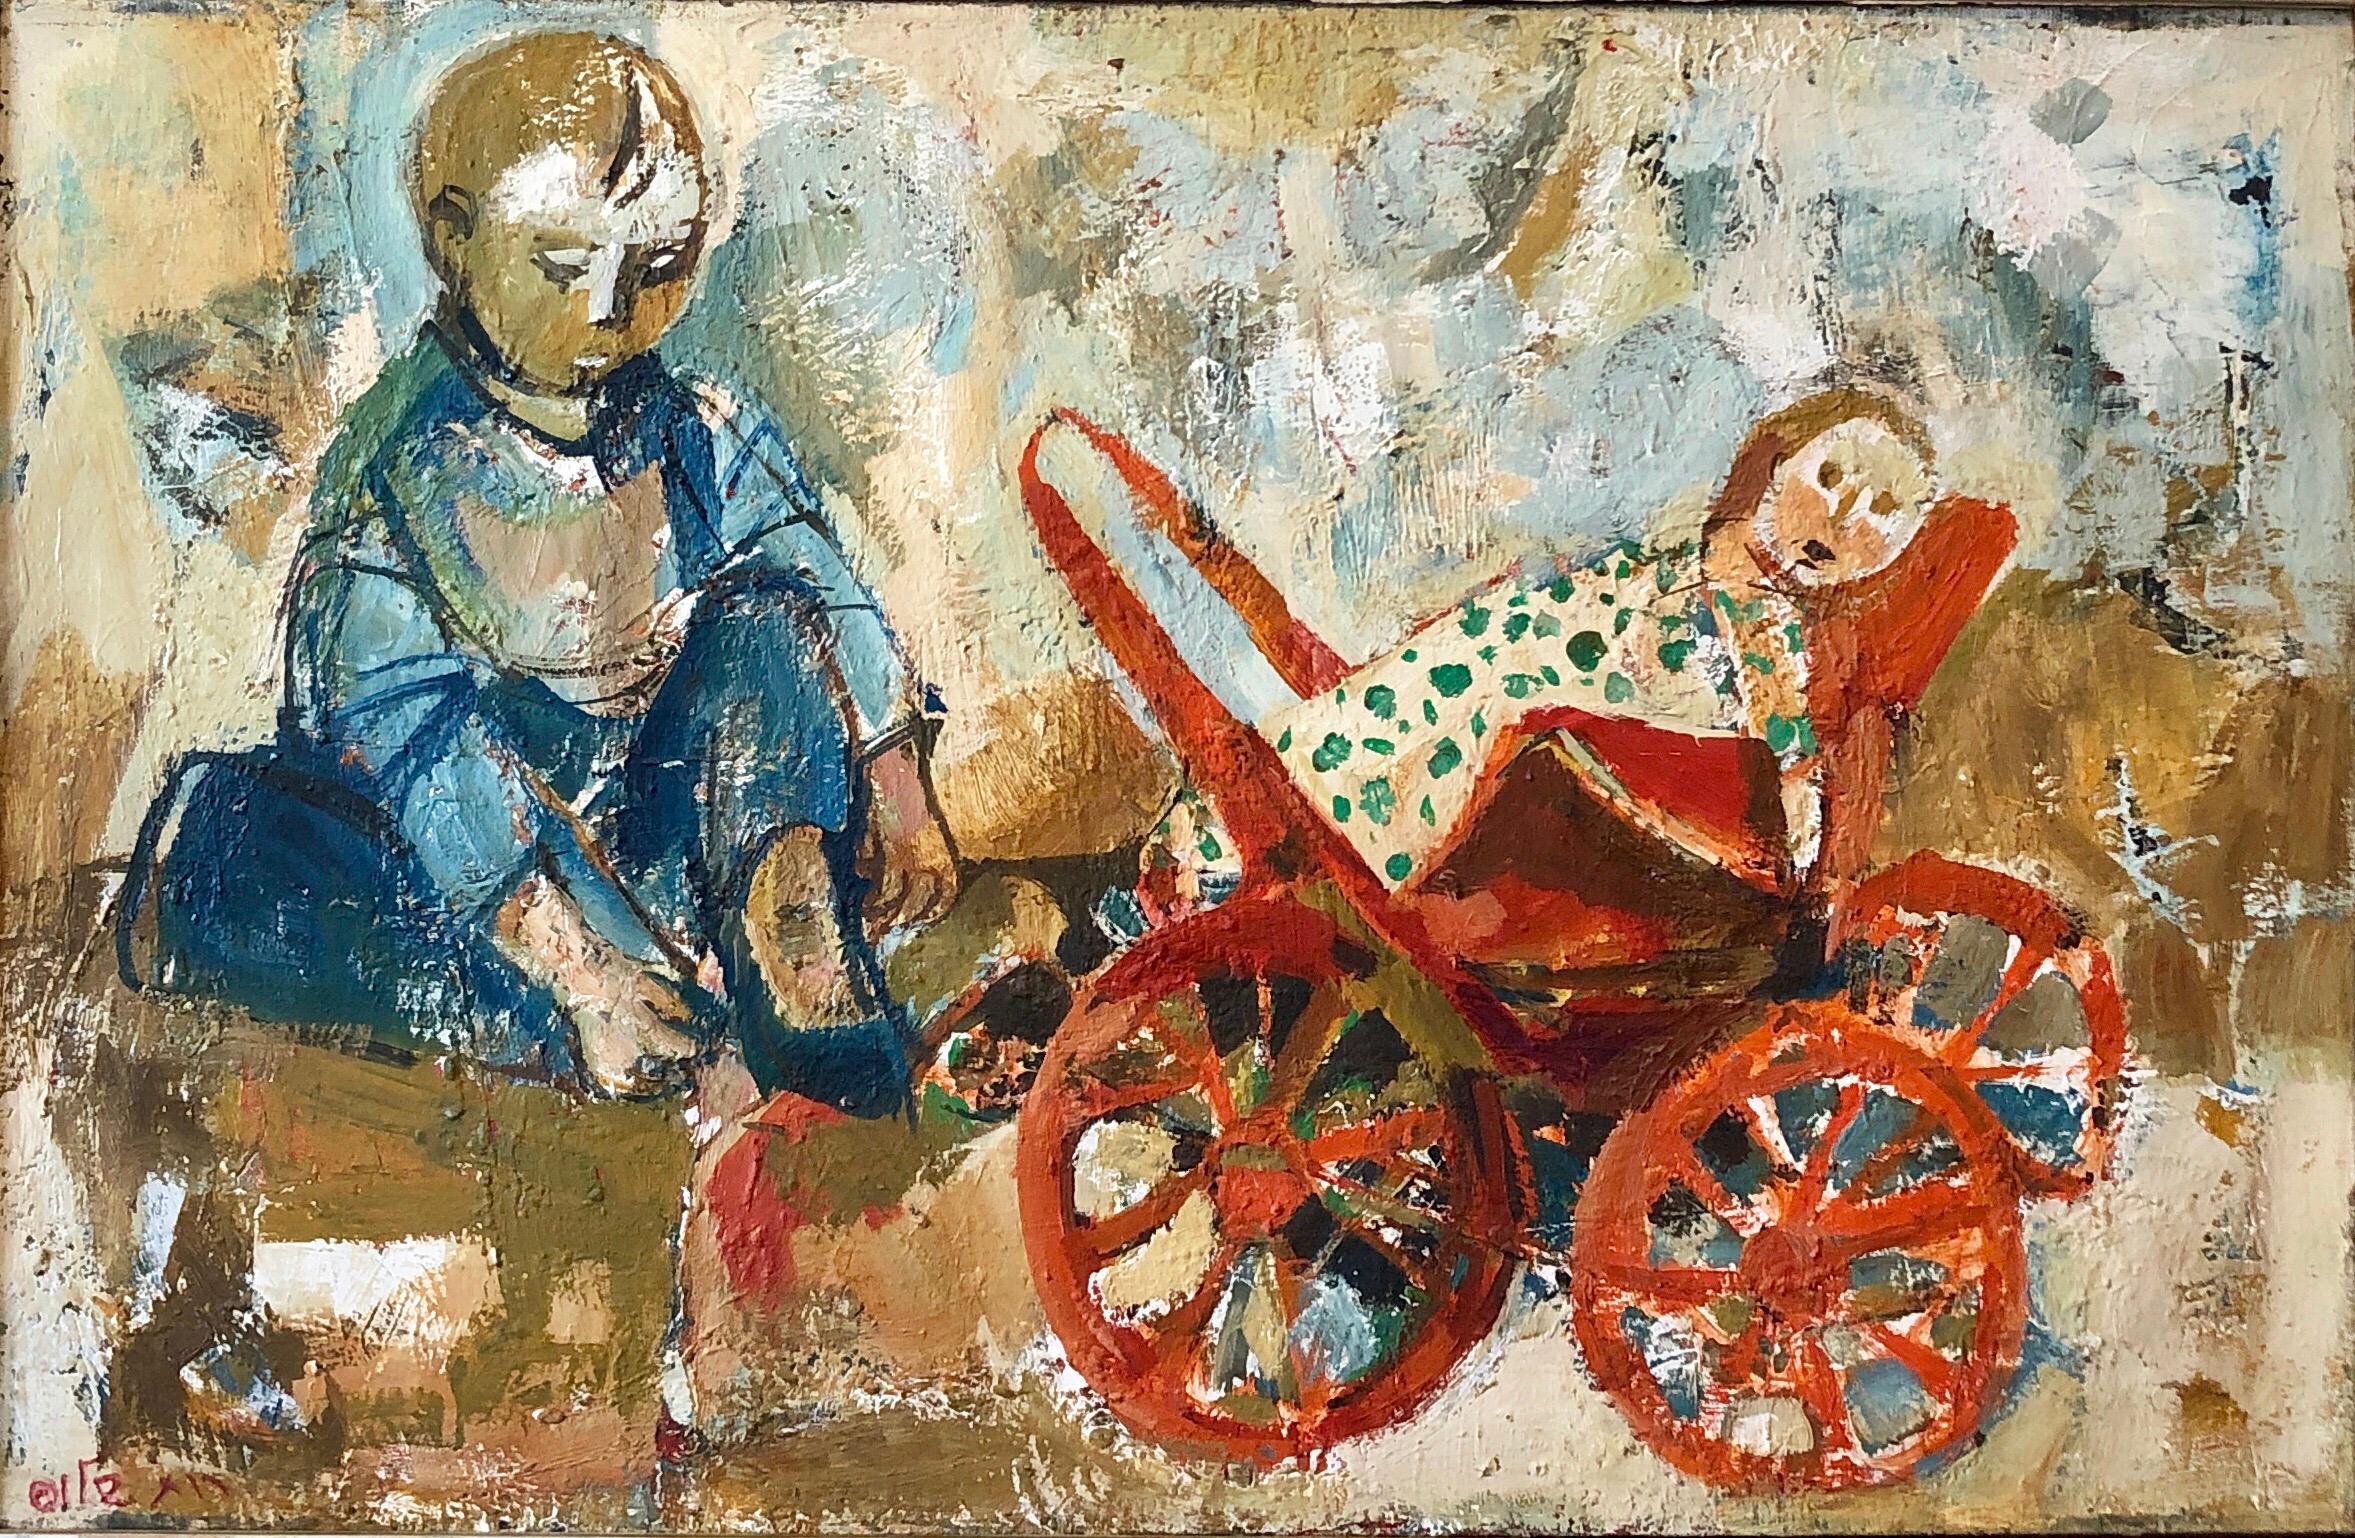 Israelisches Ölgemälde Ruth Schloss Kind, Puppe, Wagen, Kibbuz Sozialrealistische Kunst